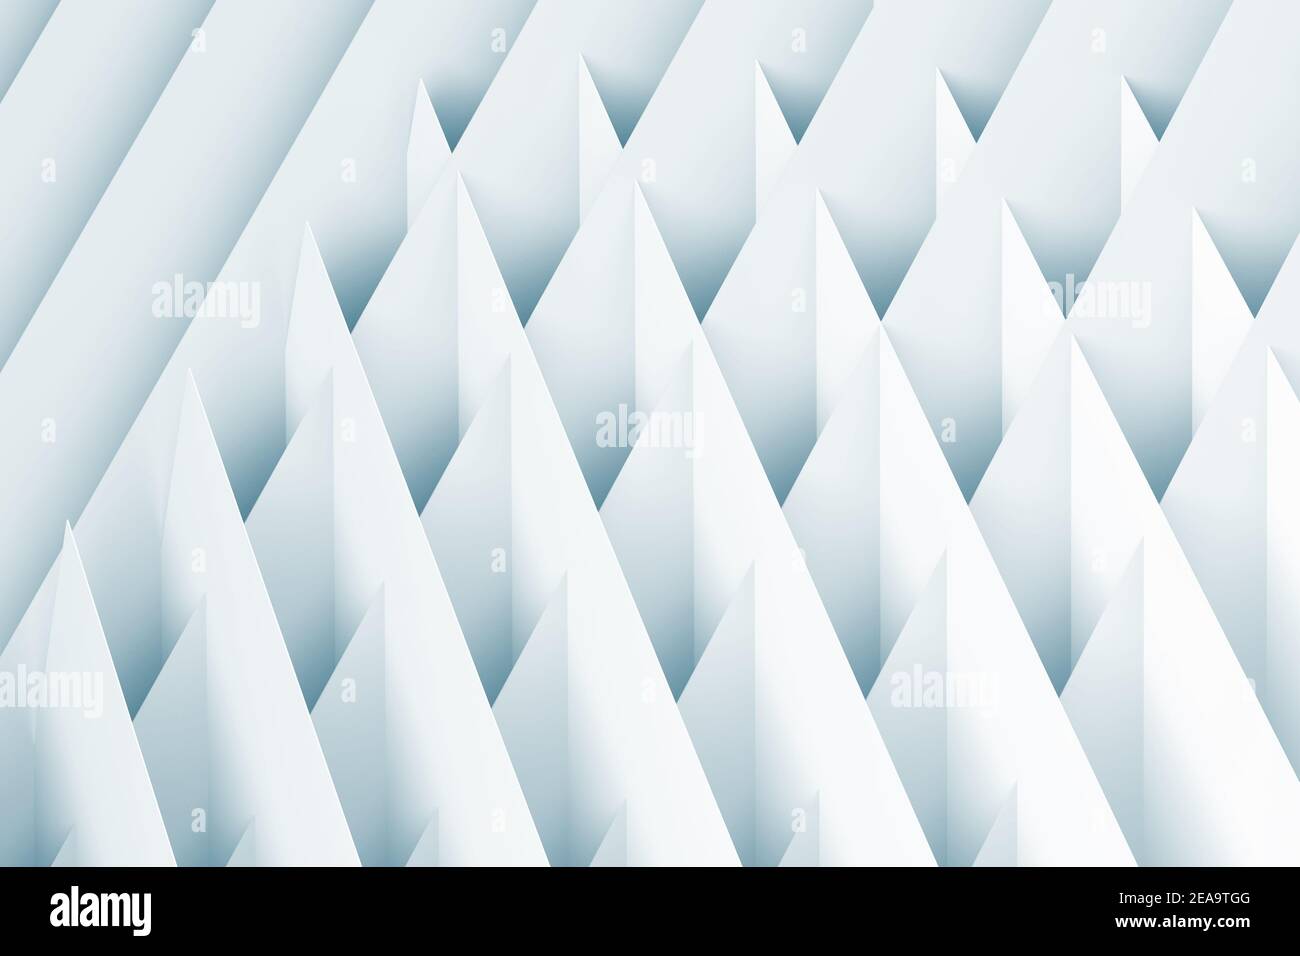 Fondo geométrico abstracto. Hojas de papel blanco intersectadas, patrón de cgi en tonos azules. ilustración de renderización 3d Foto de stock